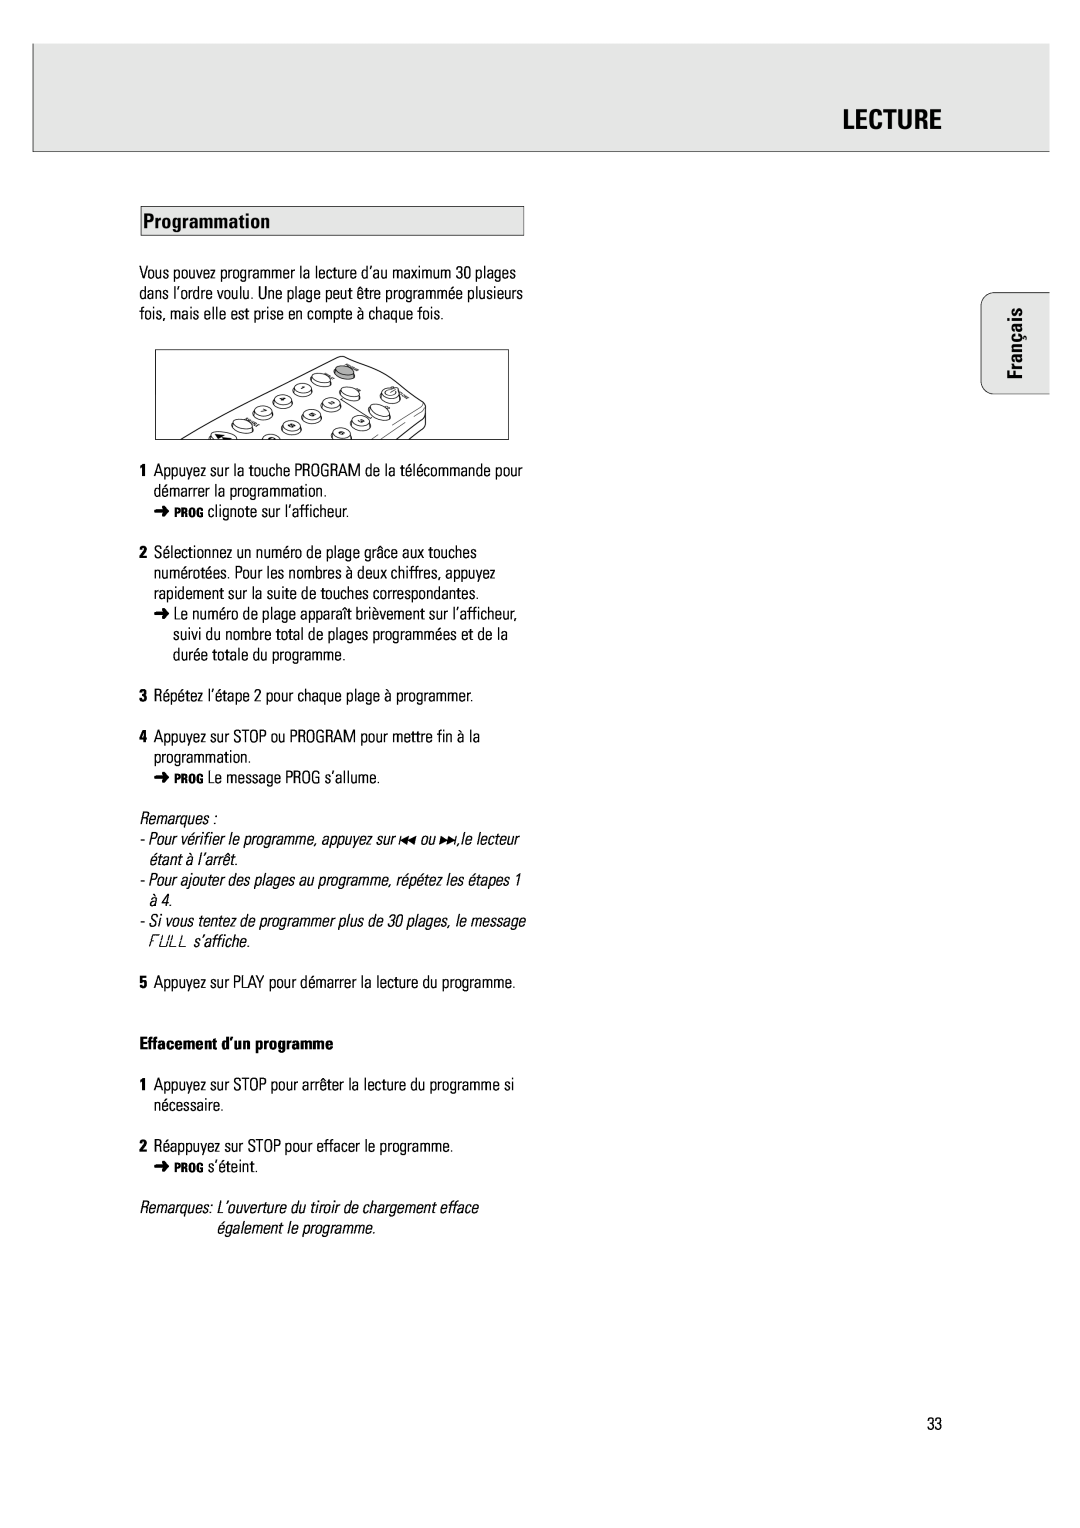 Philips CDR 760 manual Programmation, Effacement d’un programme, Lecture, Français 